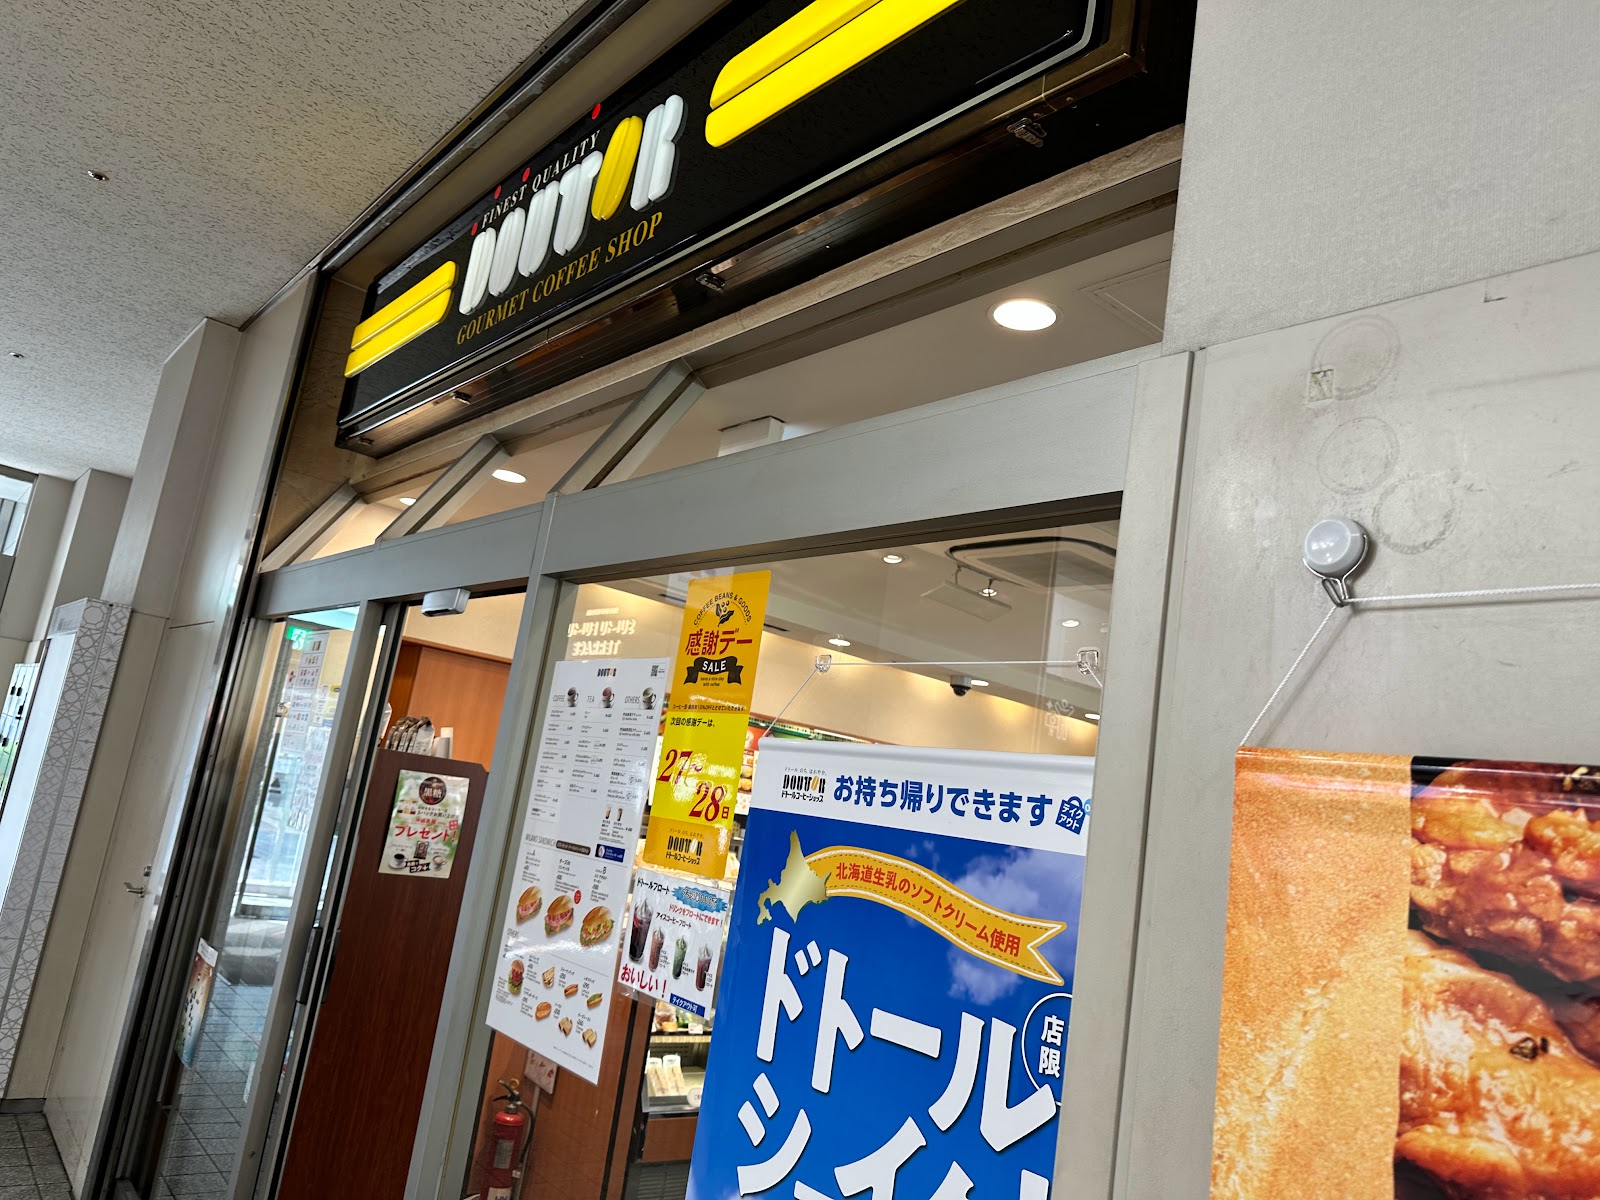 ドトールコーヒーショップ 錦糸町北口店の写真